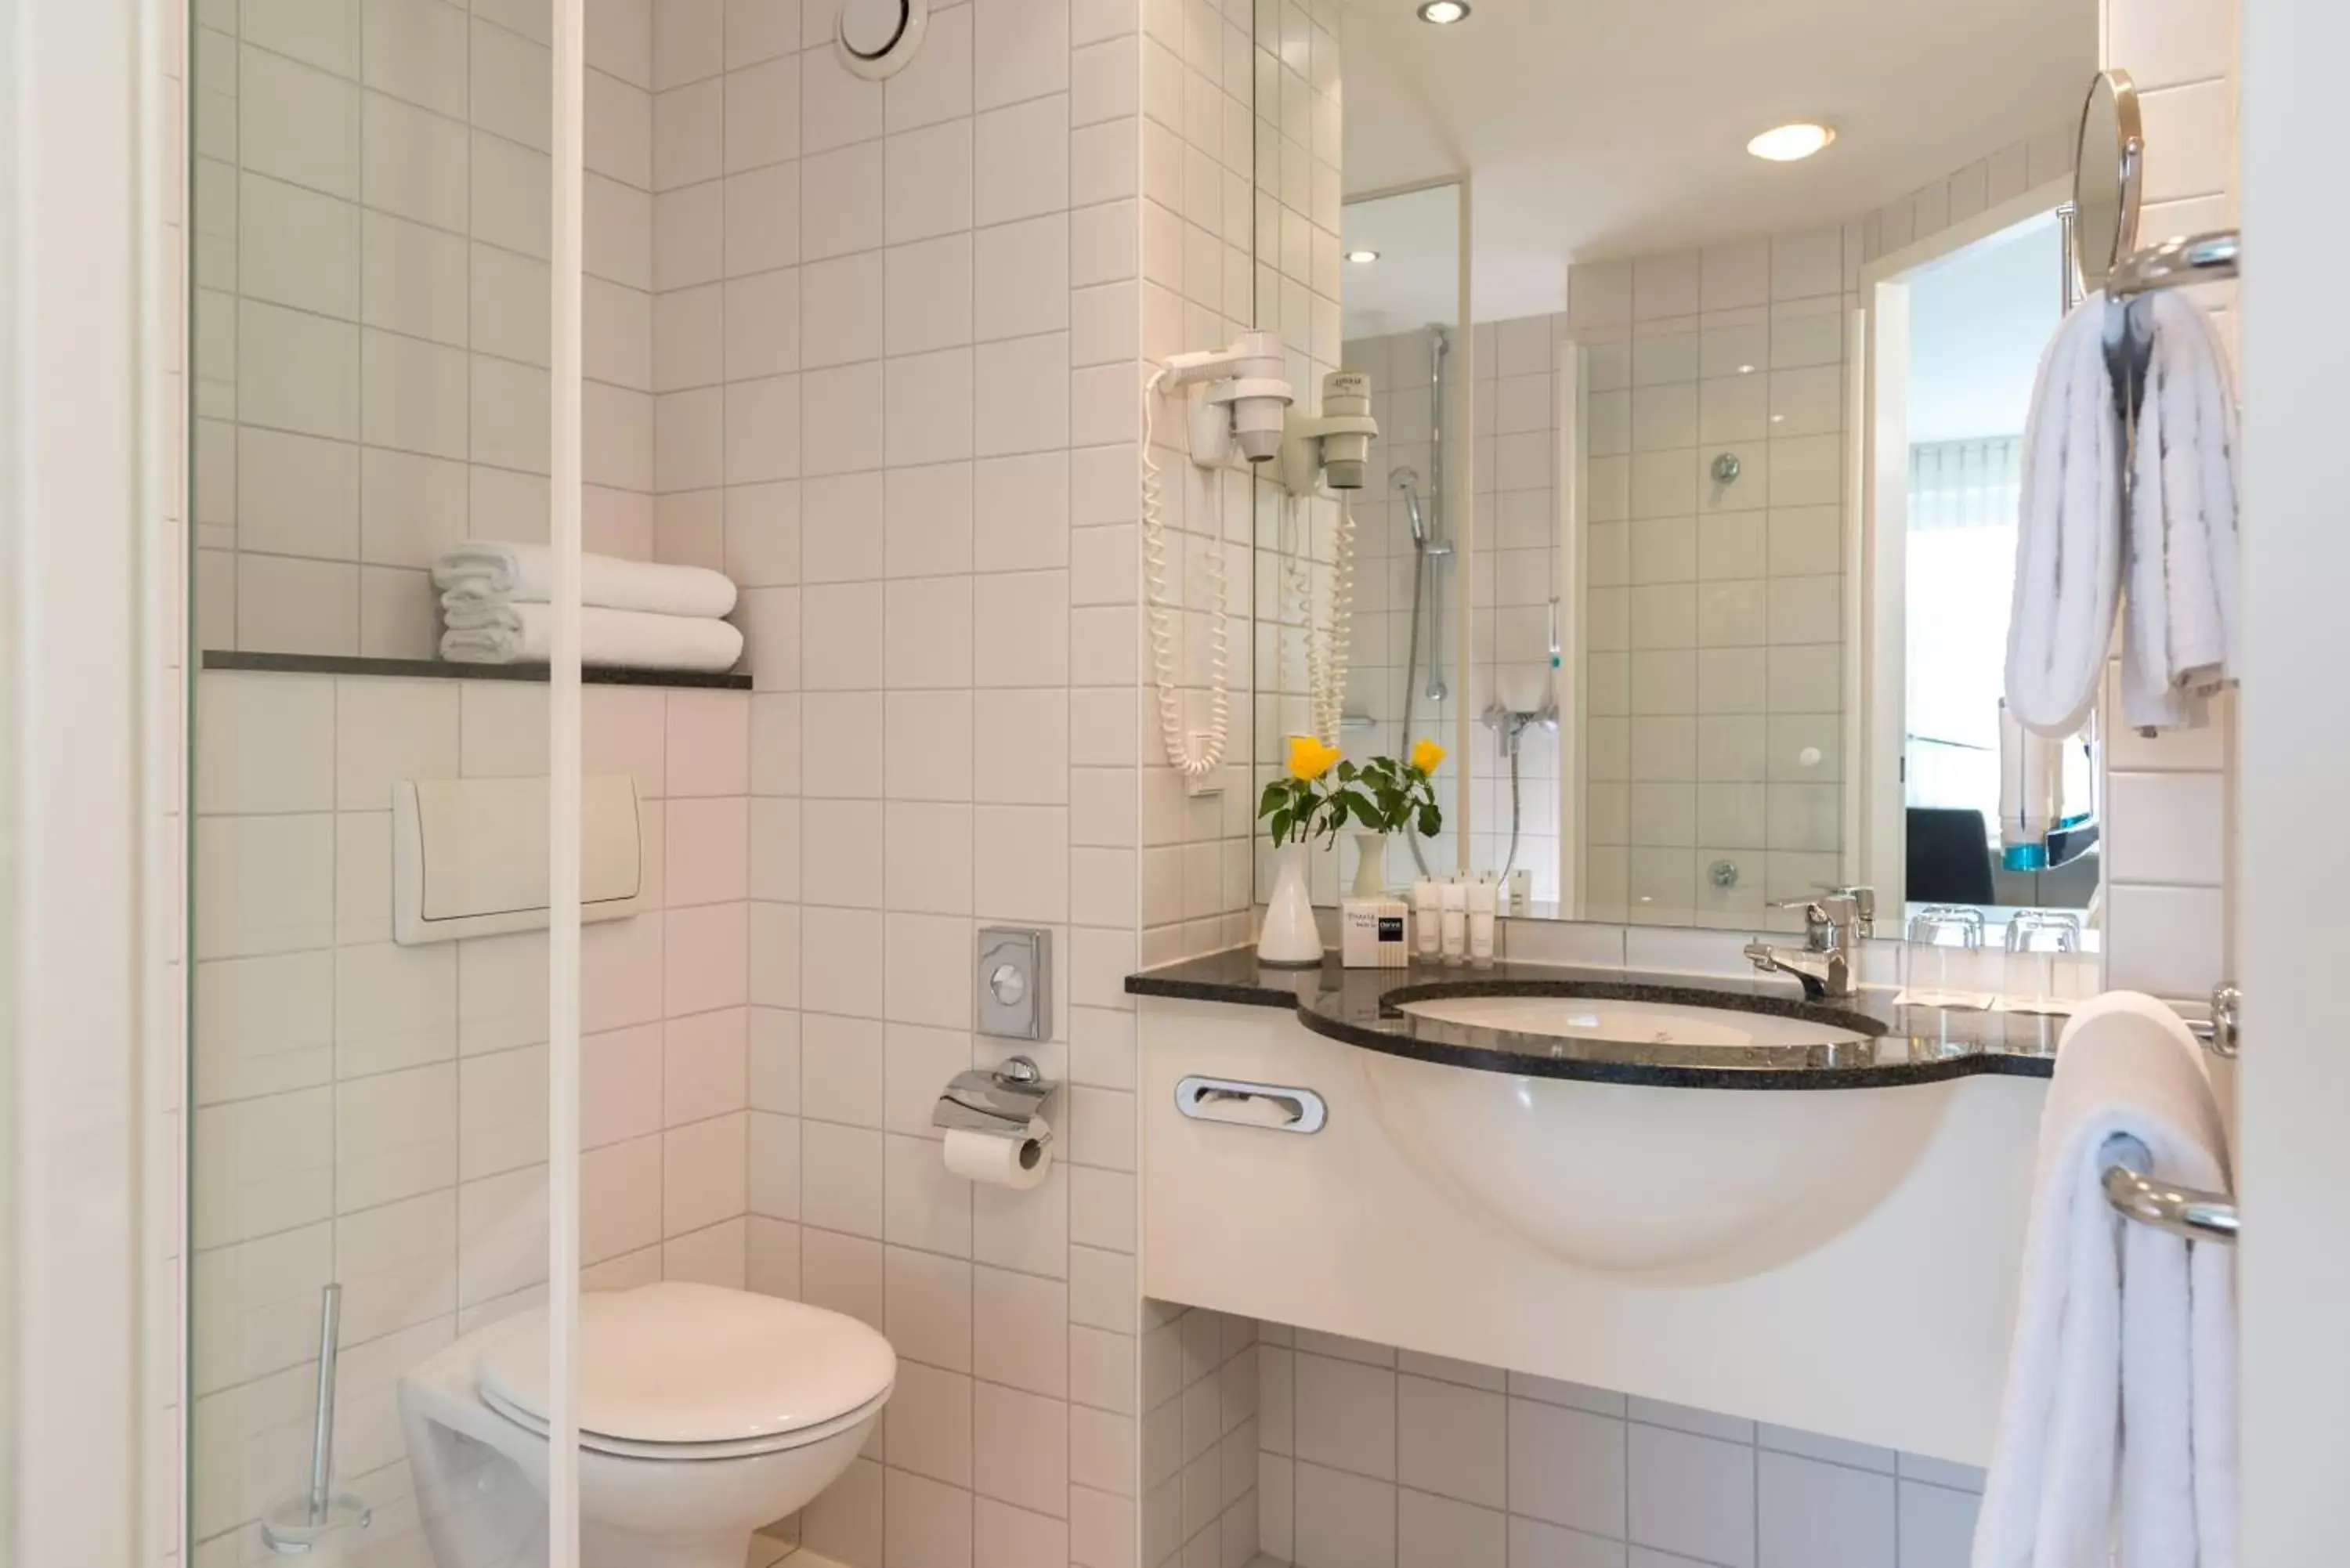 Bathroom in Essential by Dorint Berlin-Adlershof